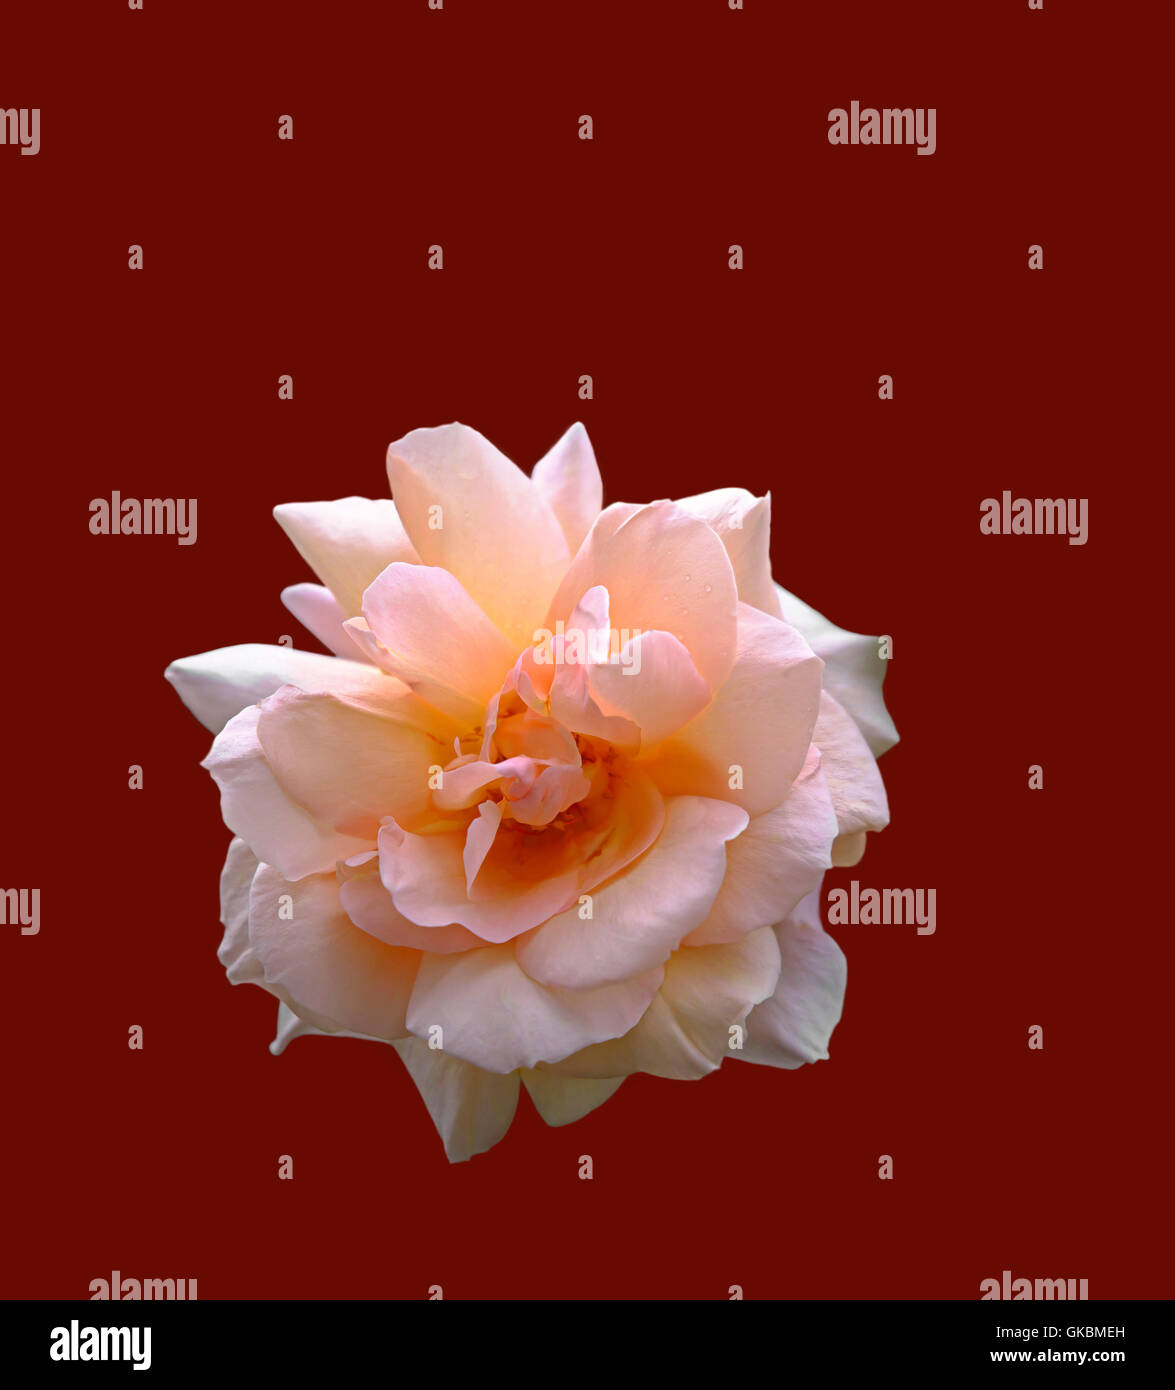 Eine schöne rosa Rose als eine Aussparung am mittleren dunkelroten Hintergrund dargestellt Stockfoto